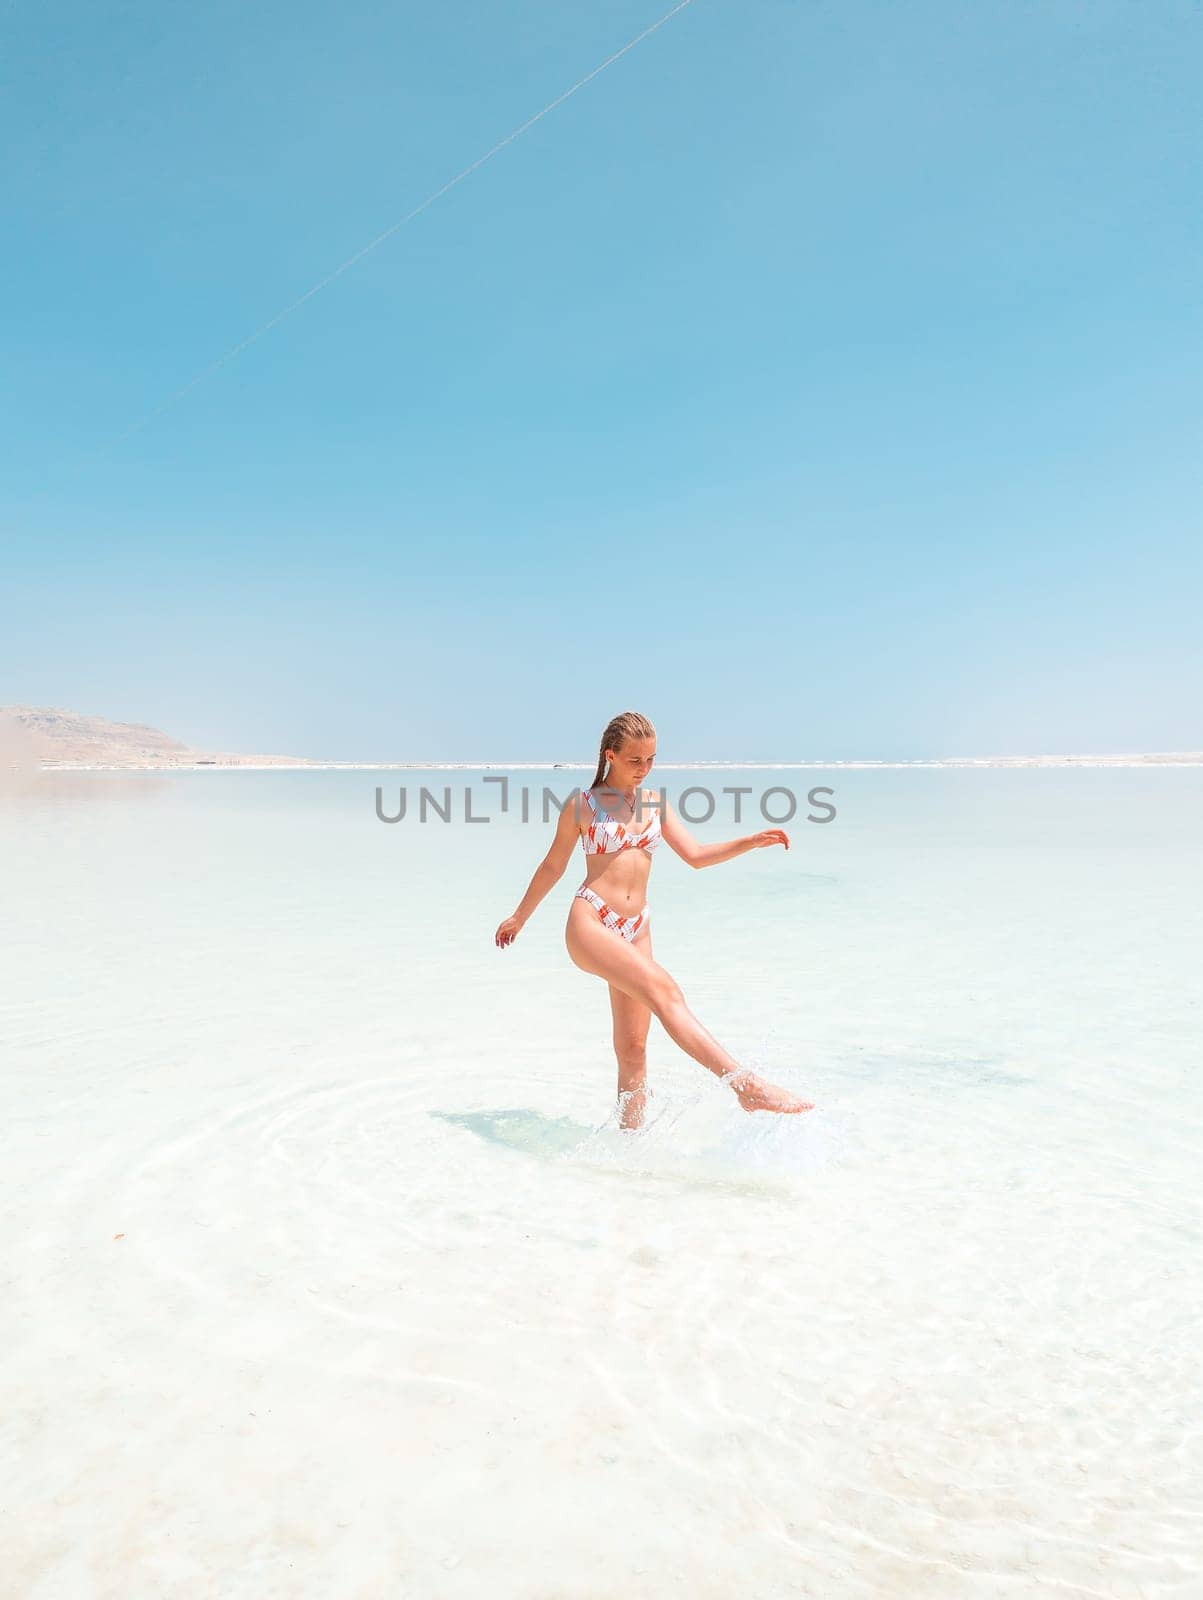 Beautigul girl in swimming suit on Dead sea salt crystals formation coastline, clear cyan green water at Ein Bokek beach, Israel by Len44ik